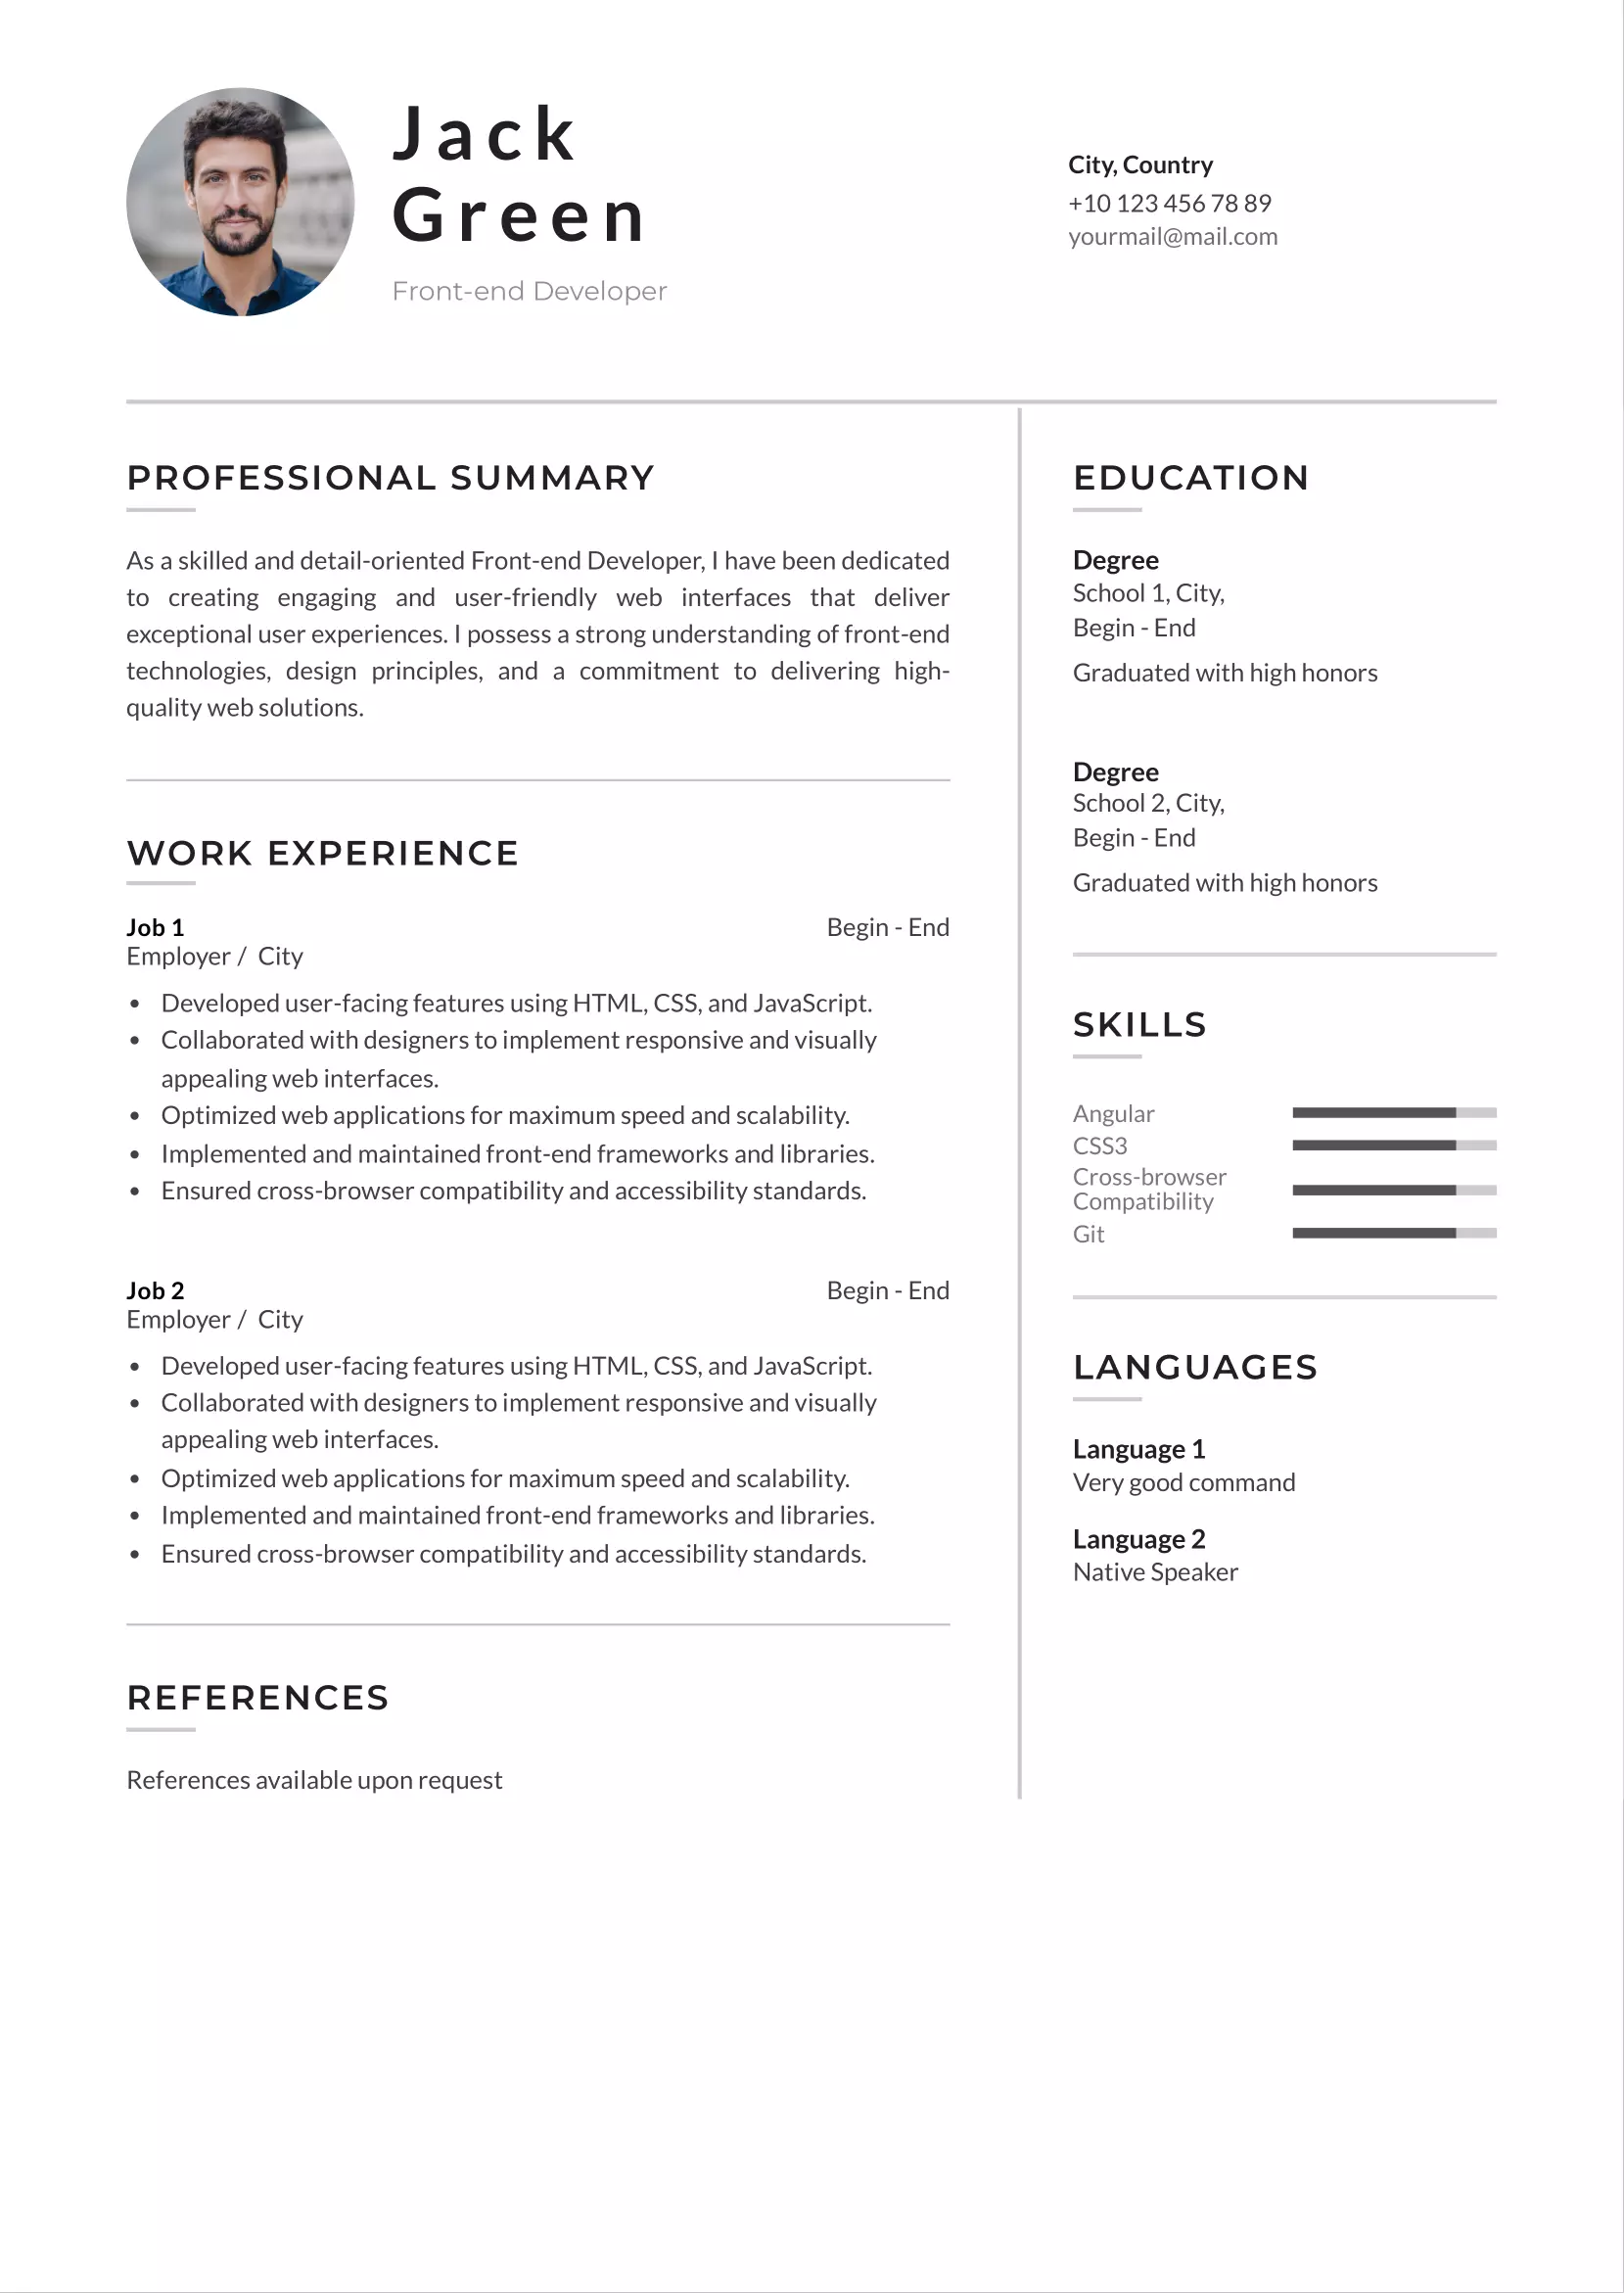 Front-end developer resume CV